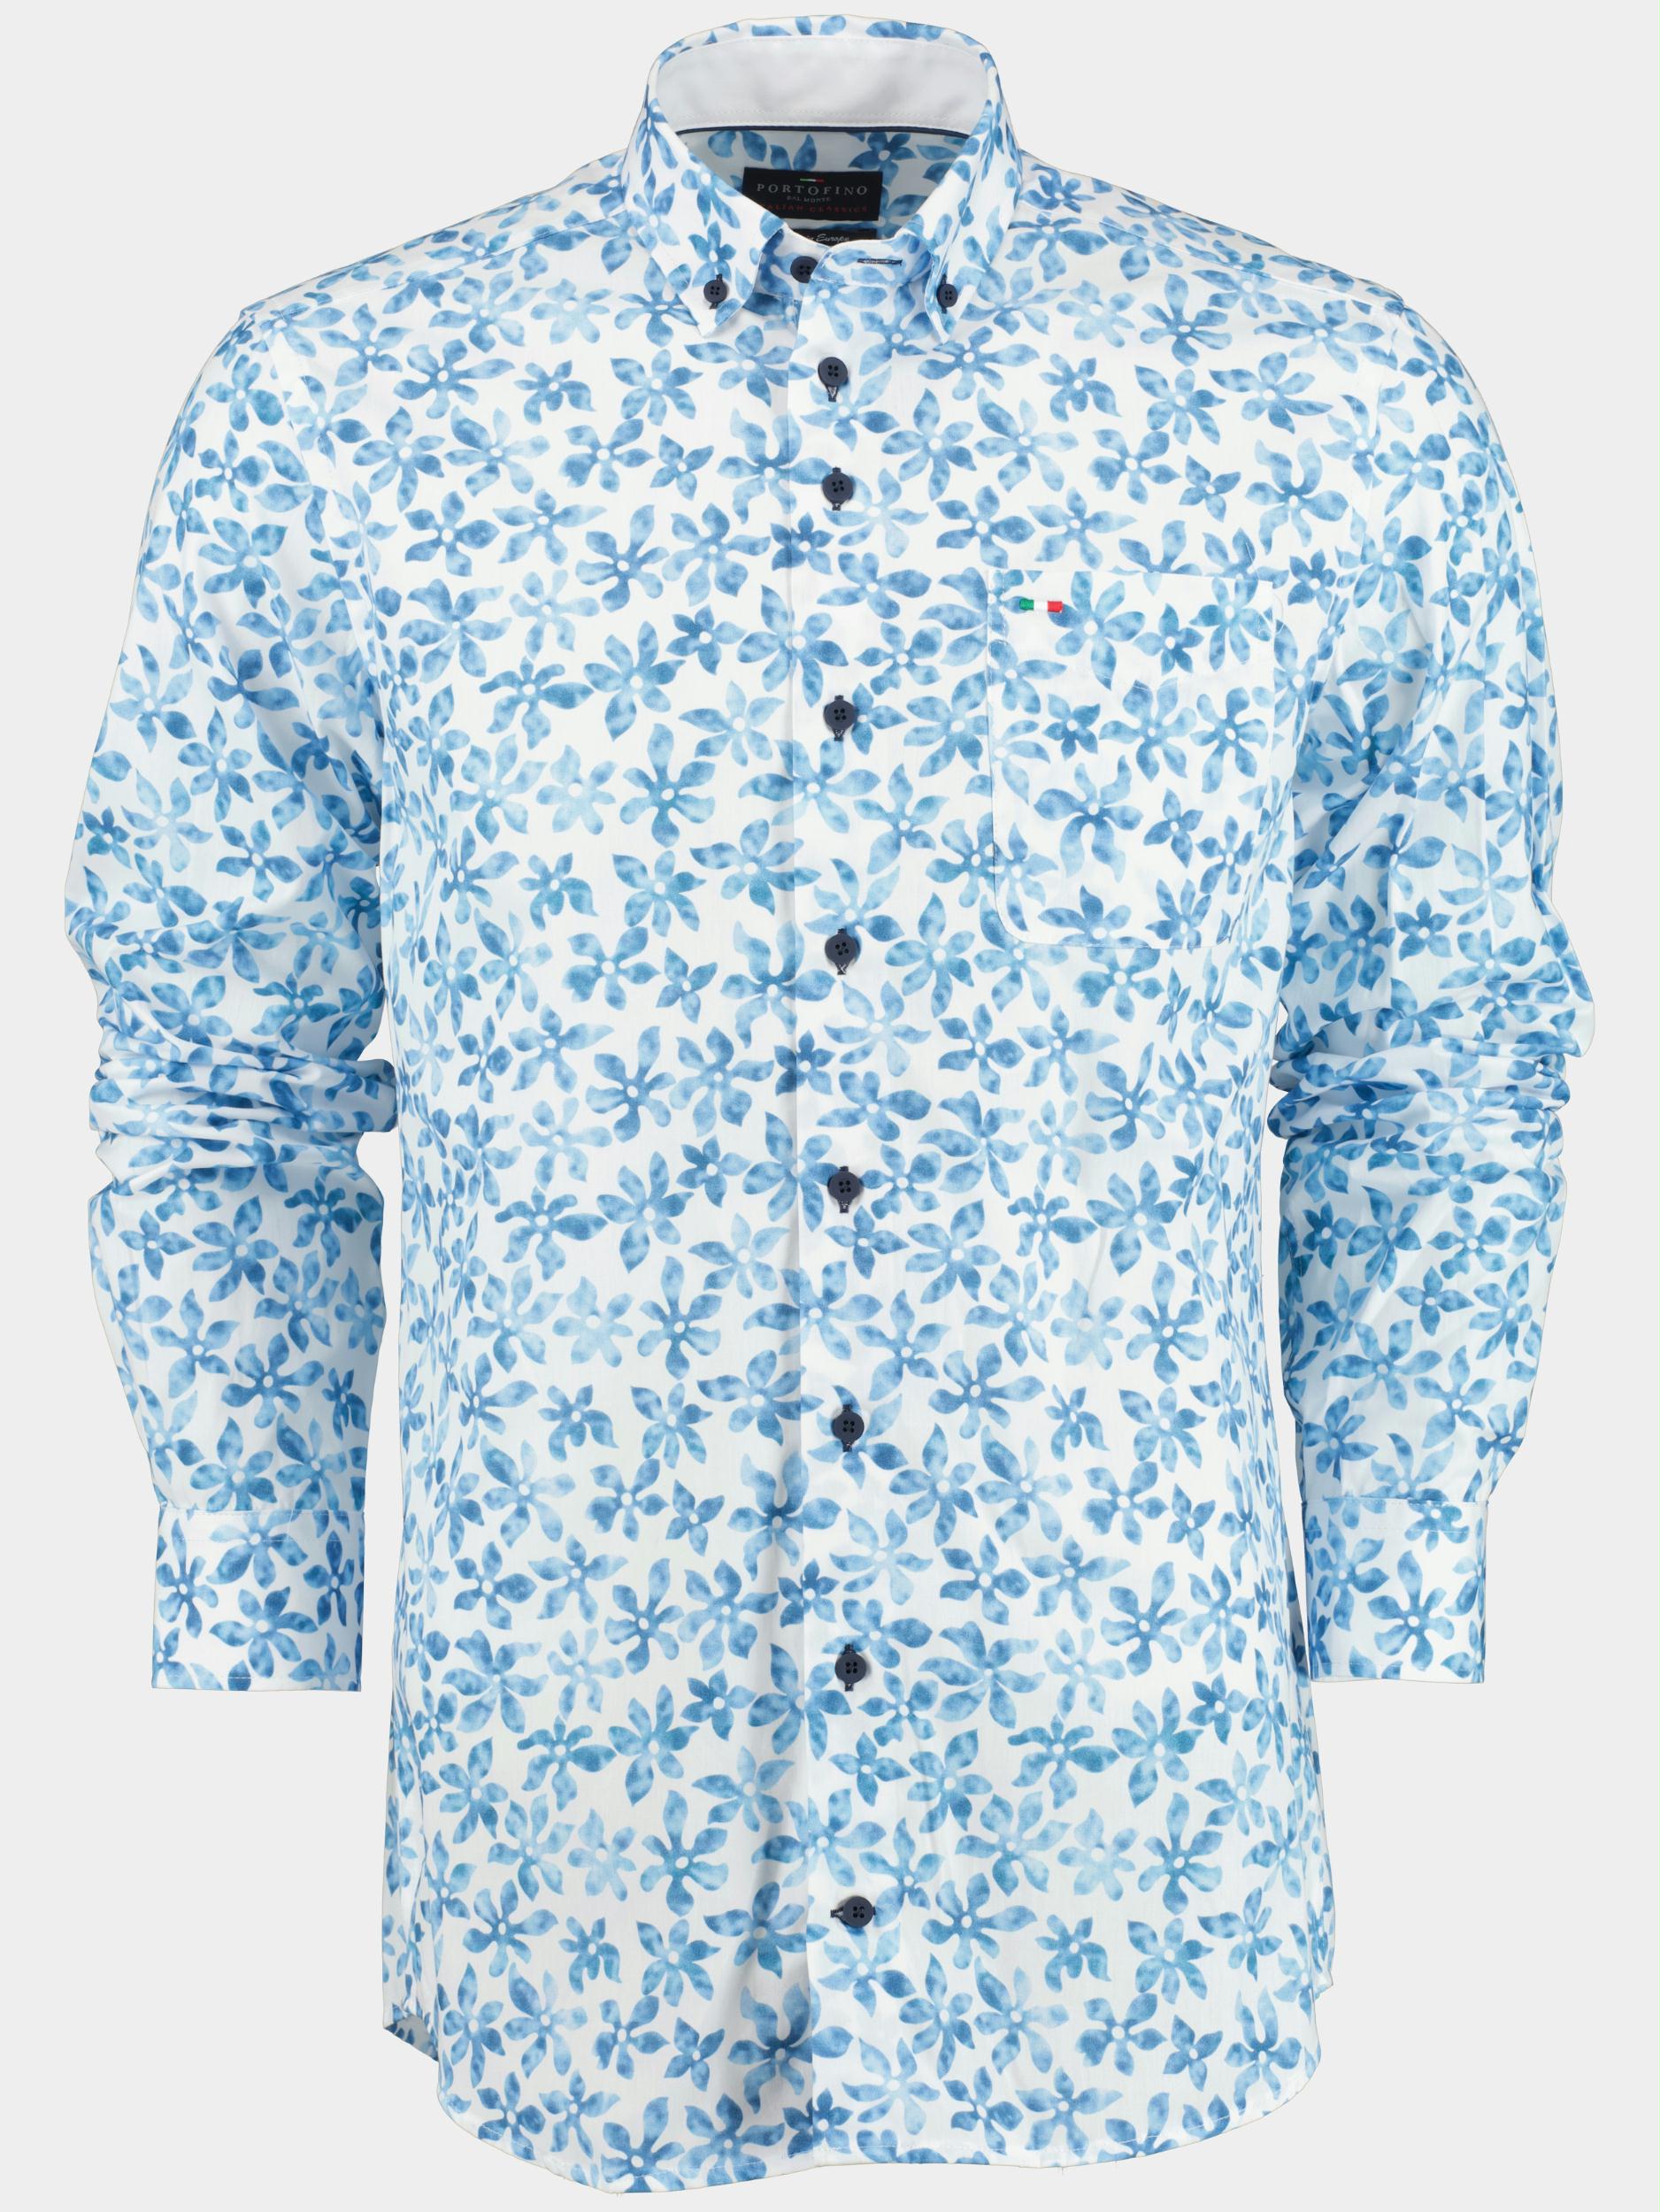 Portofino Casual hemd lange mouw Blauw PF09 21785/01